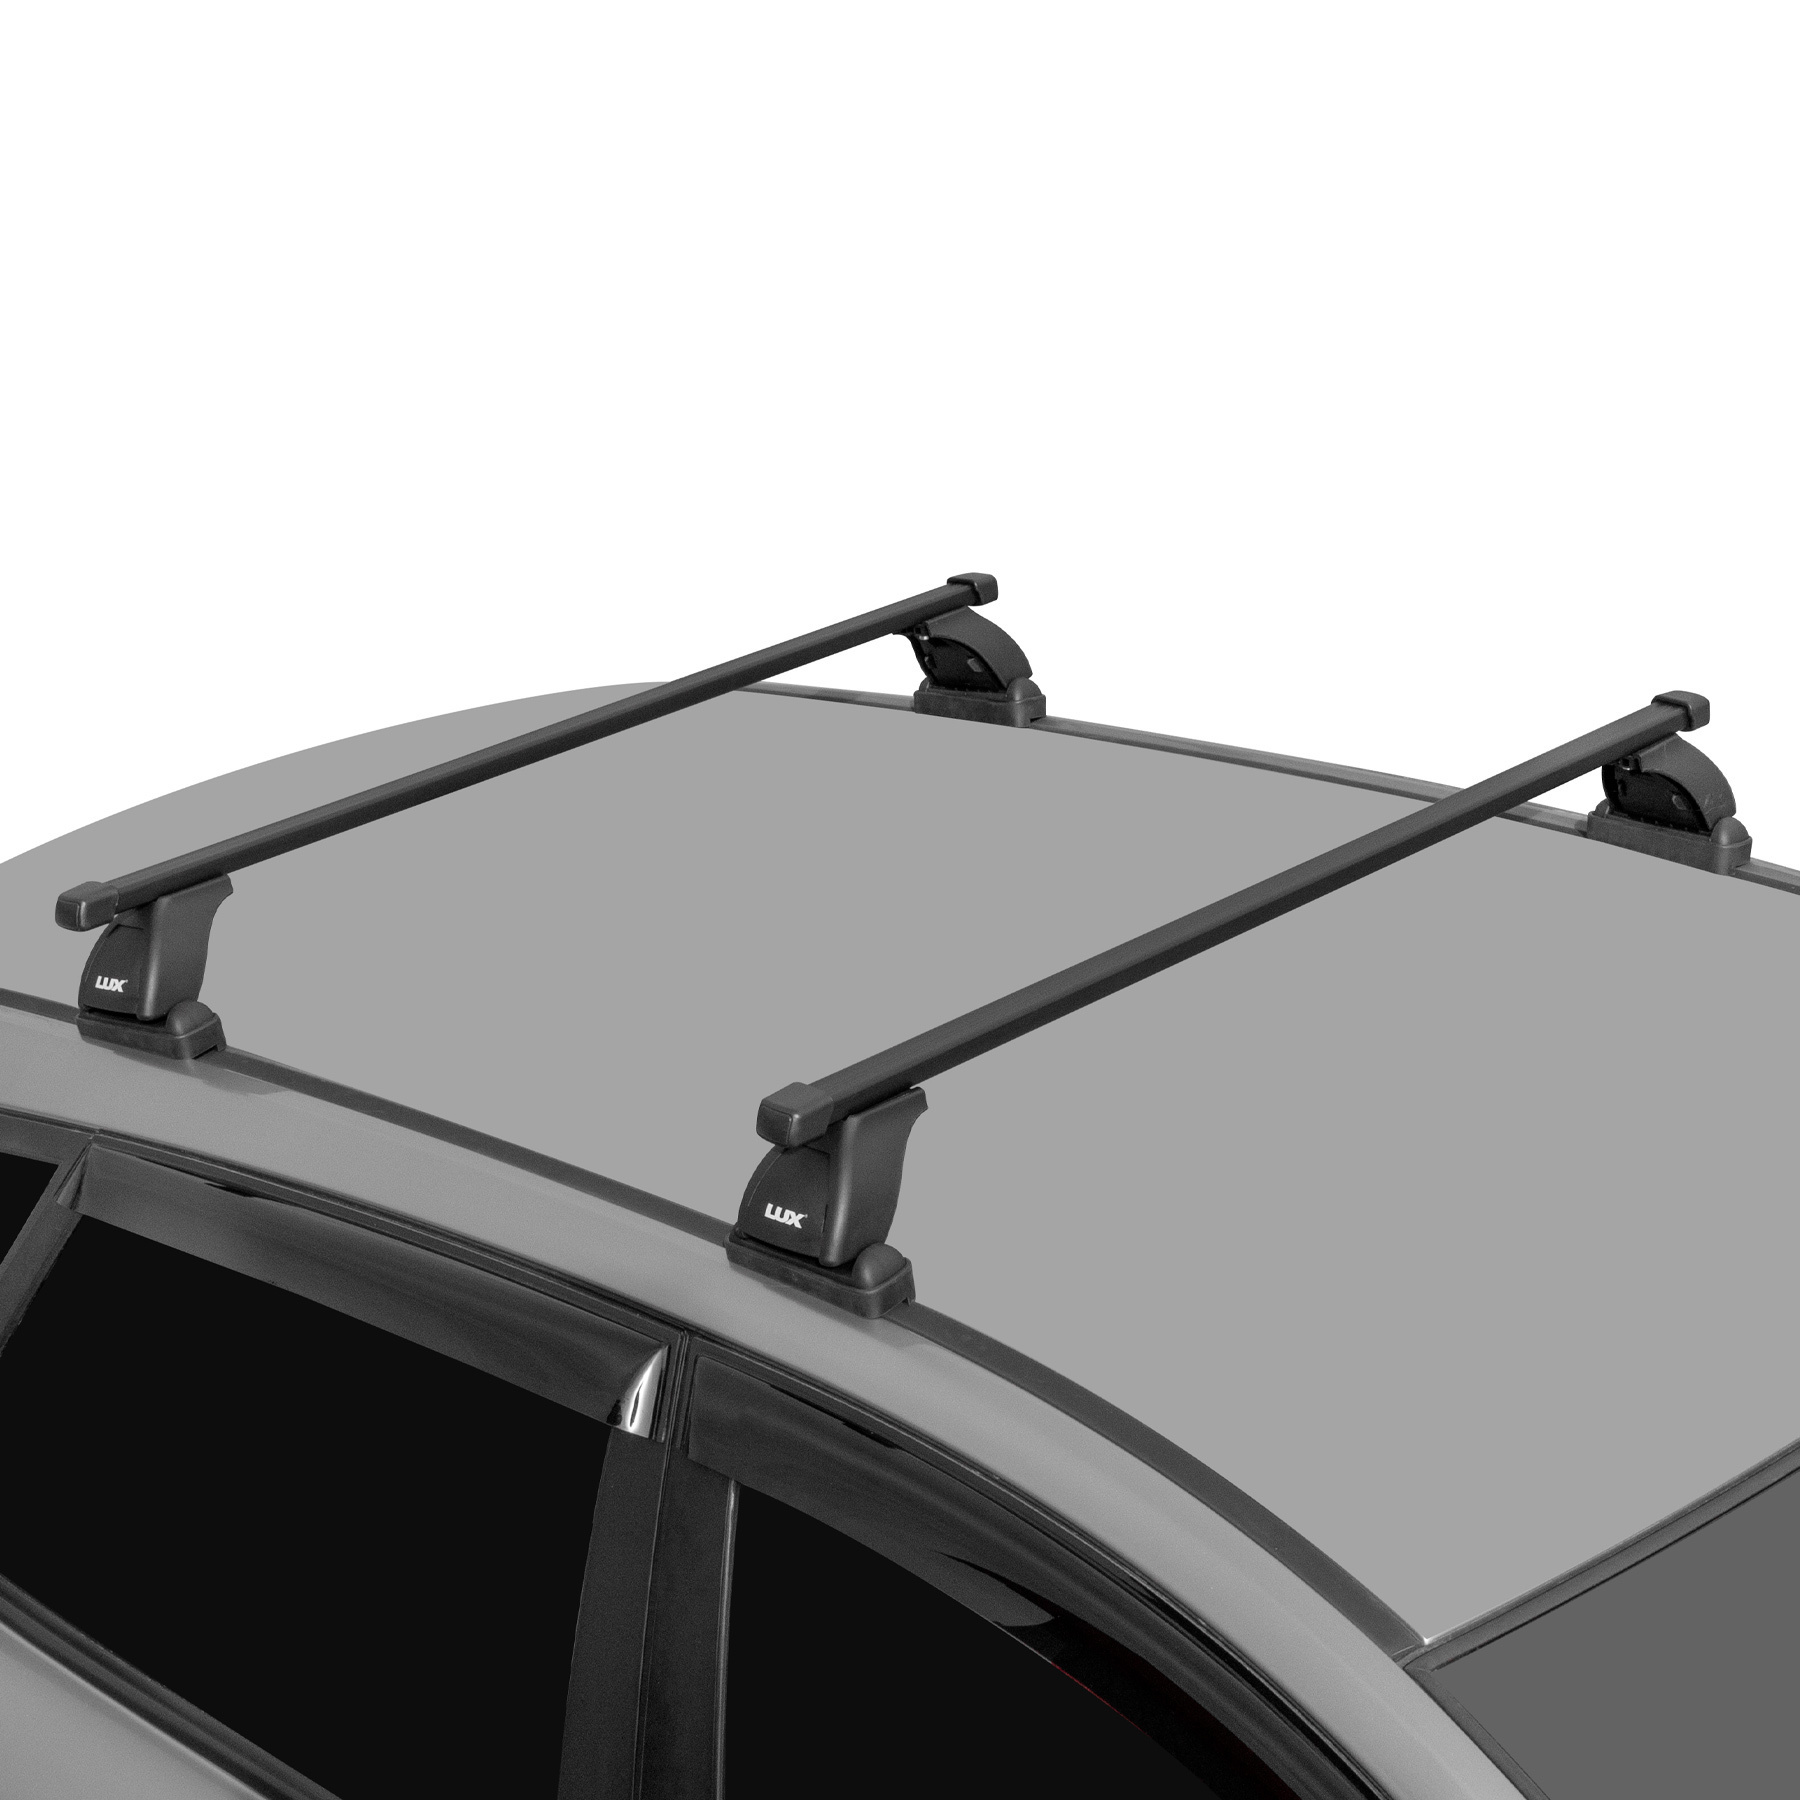 Алюминиевый багажник для Lada Travel, Chevrolet Niva — купить в магазине Ларгус Шоп